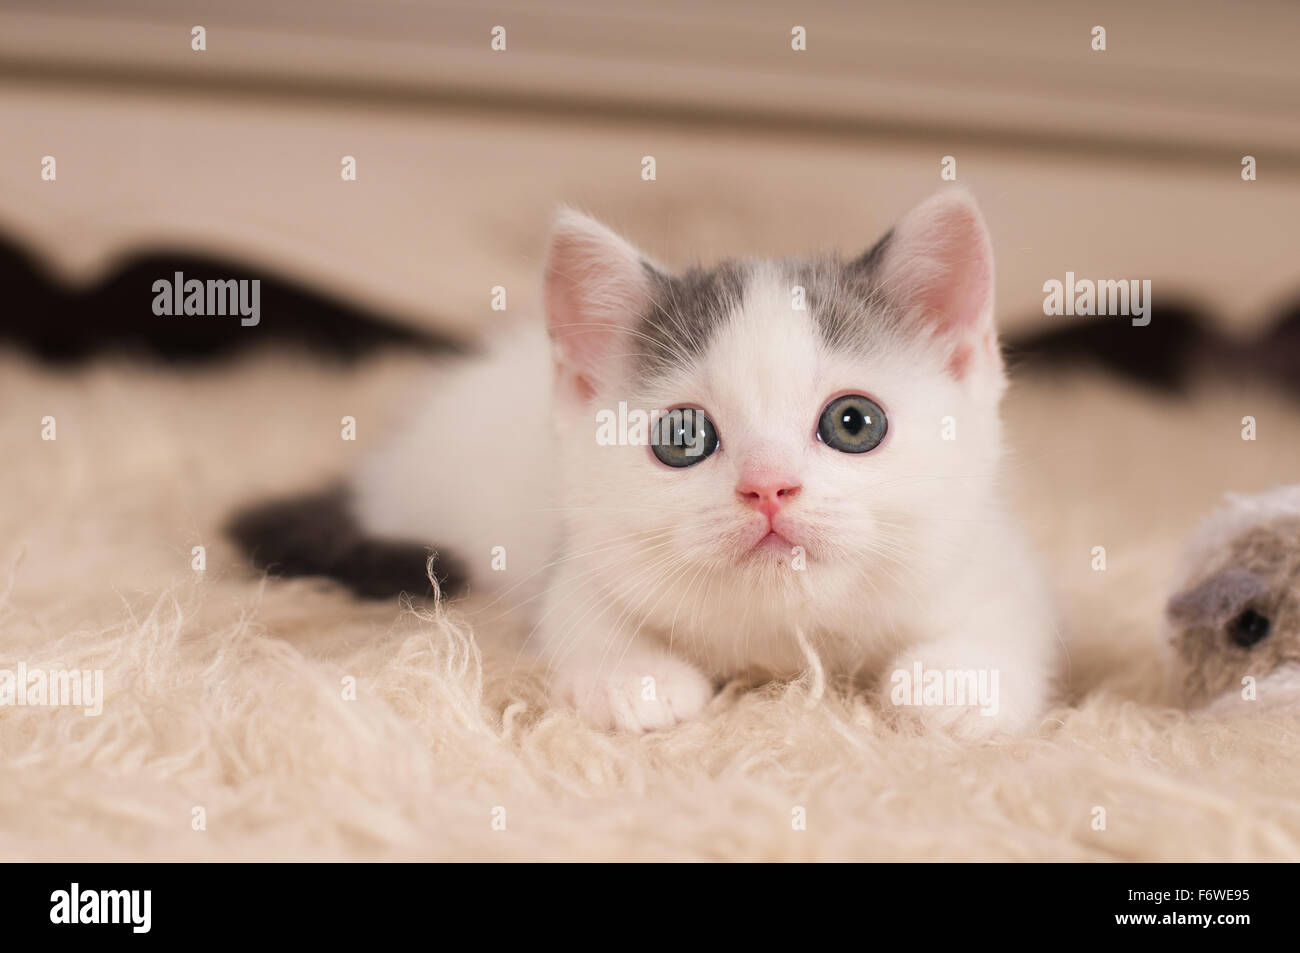 Cute little kitten Stock Photo